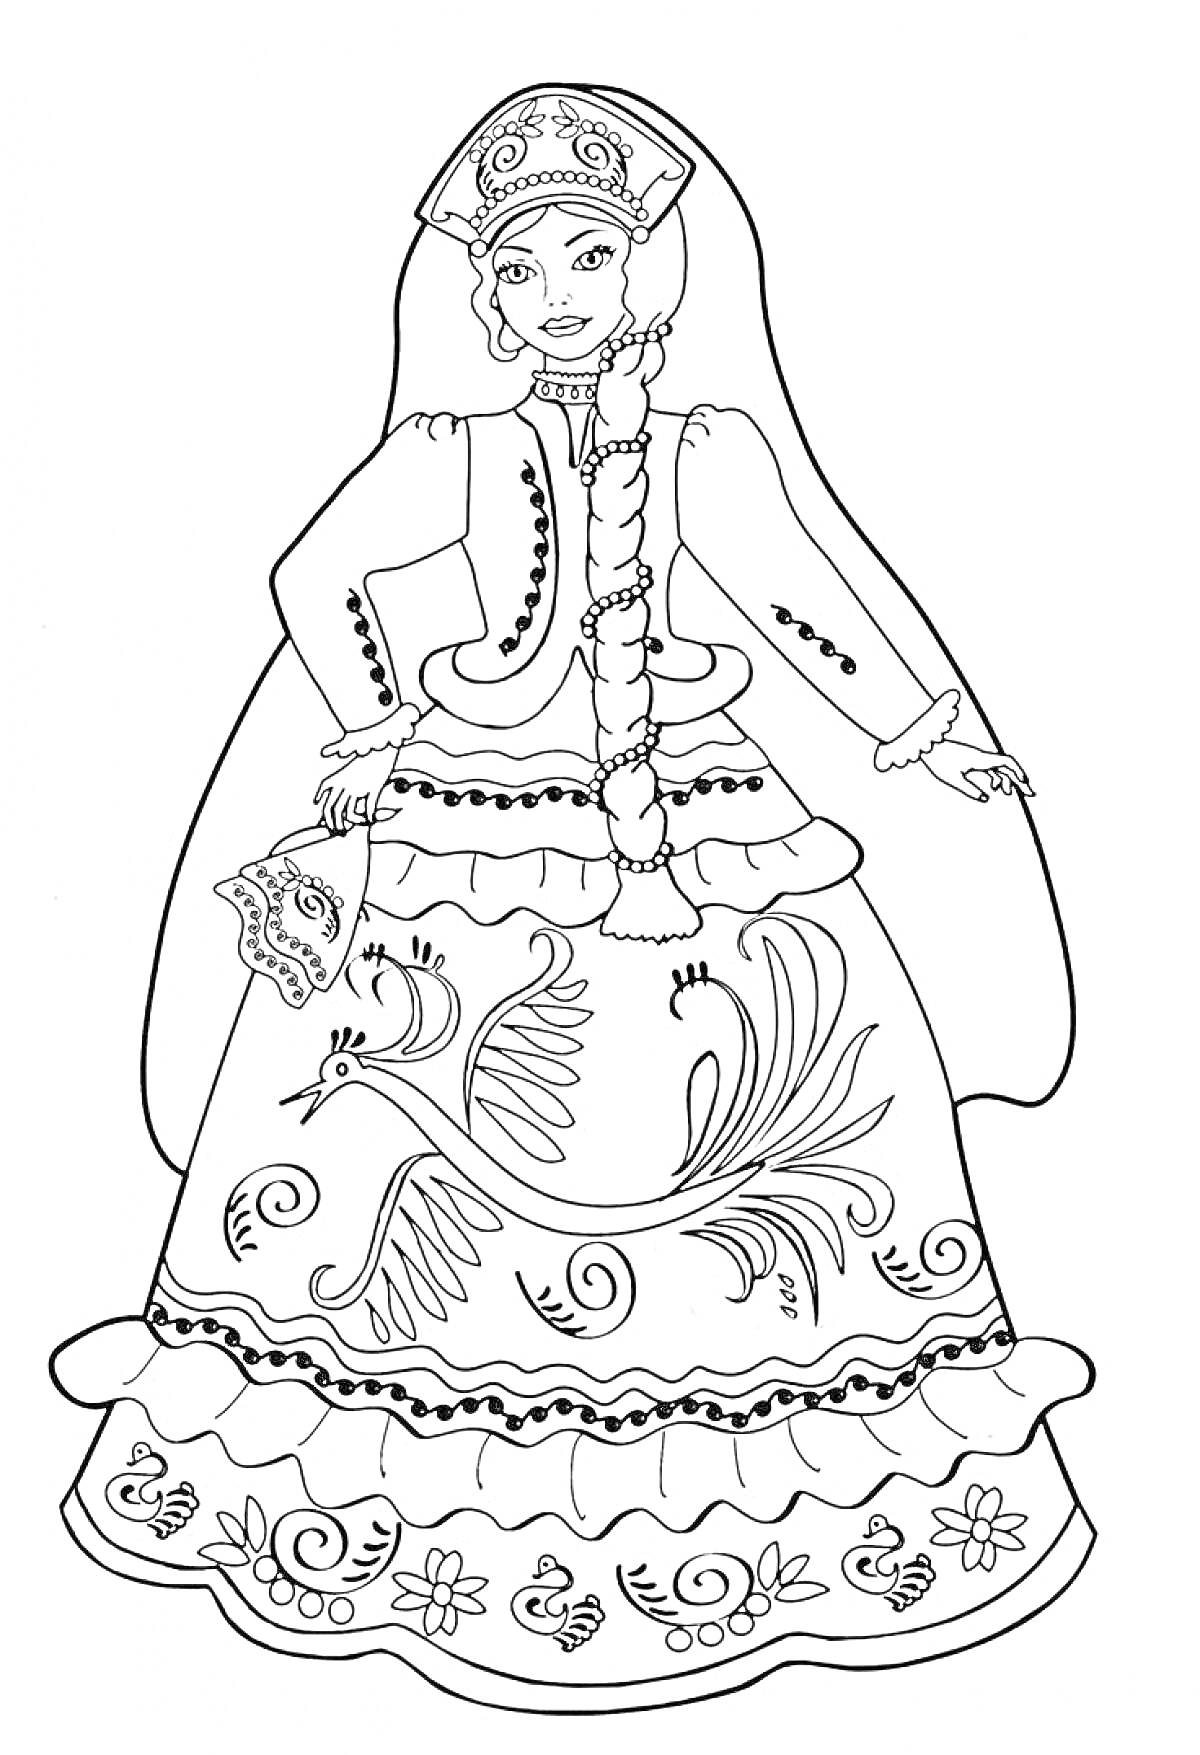 Раскраска Девушка в русском народном костюме с кокошником, сарафаном, поясом, косой и вышивкой